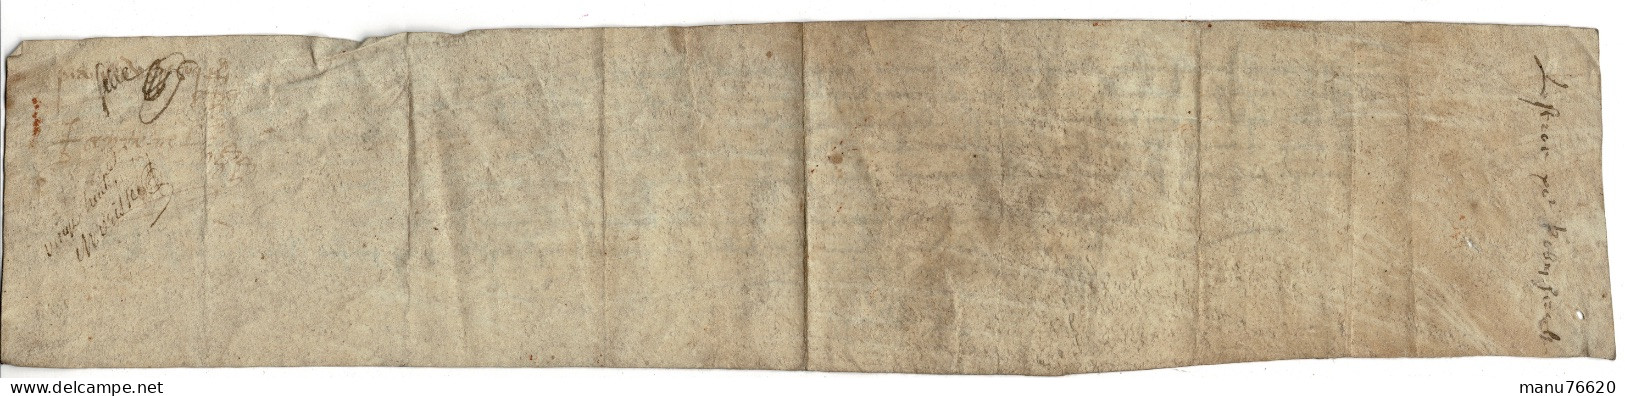 Ref 2 - RARE!, Lettre Manuscrite , Document Notarial , Le Havre Et Environs , écritures Très Anciennes , Papier épais. - Manuskripte